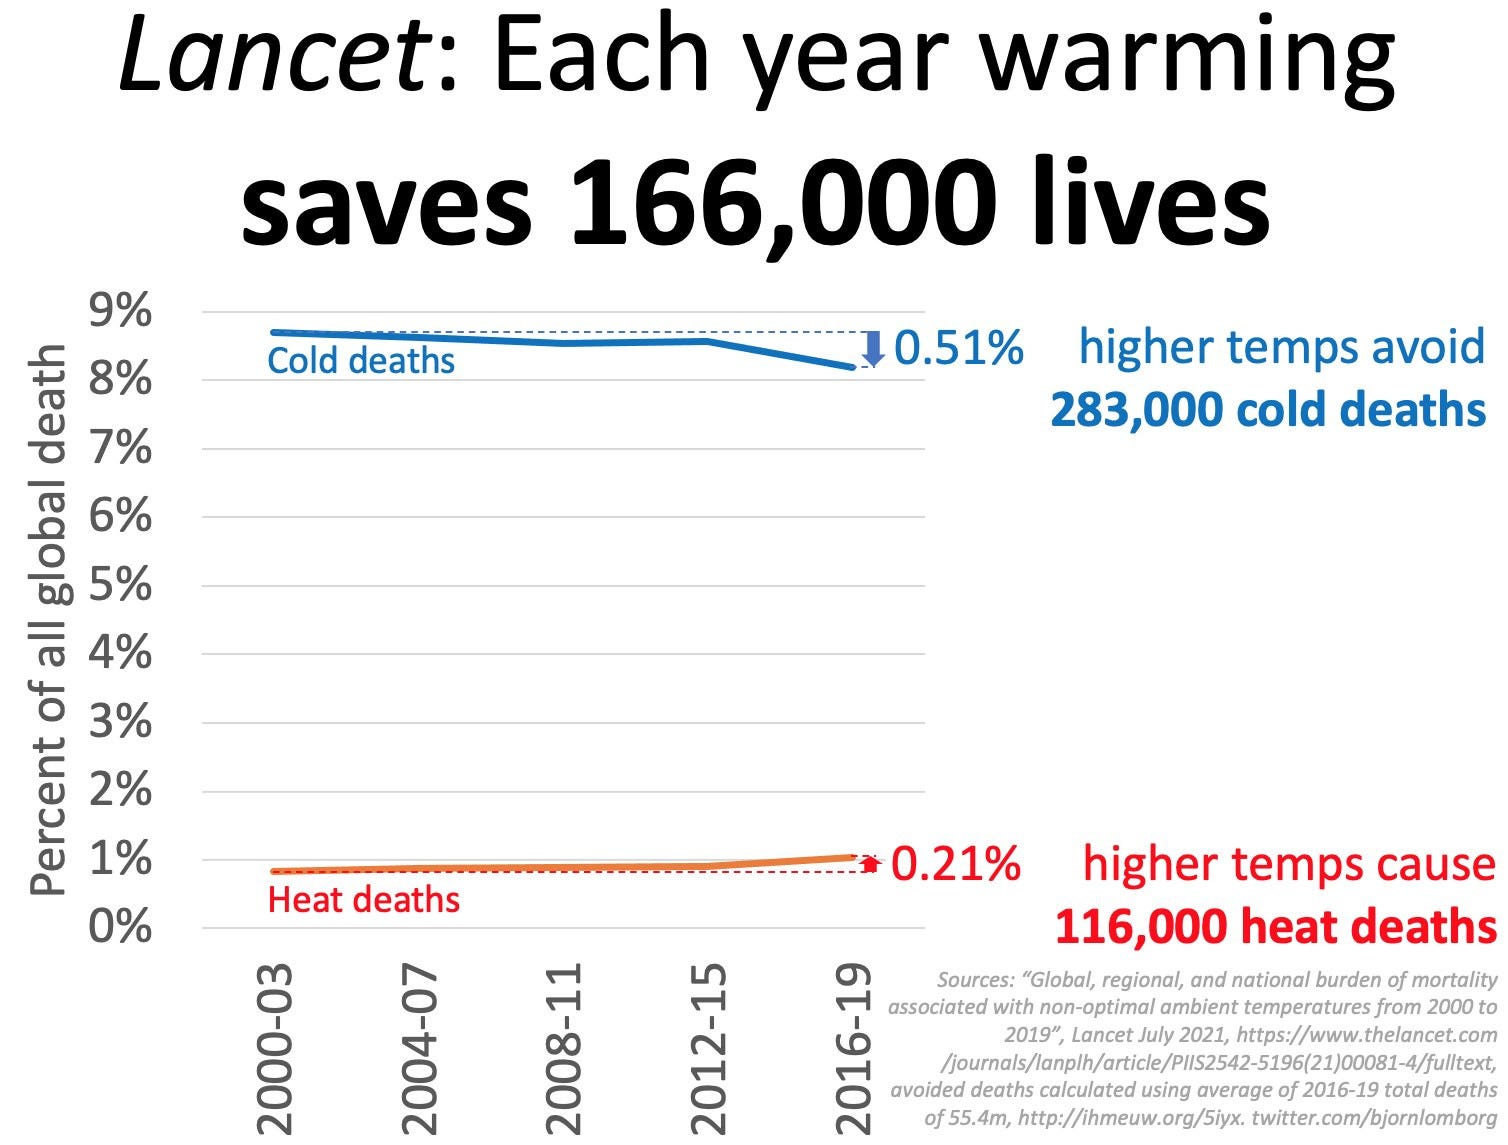 lancet-warming-saves-lives